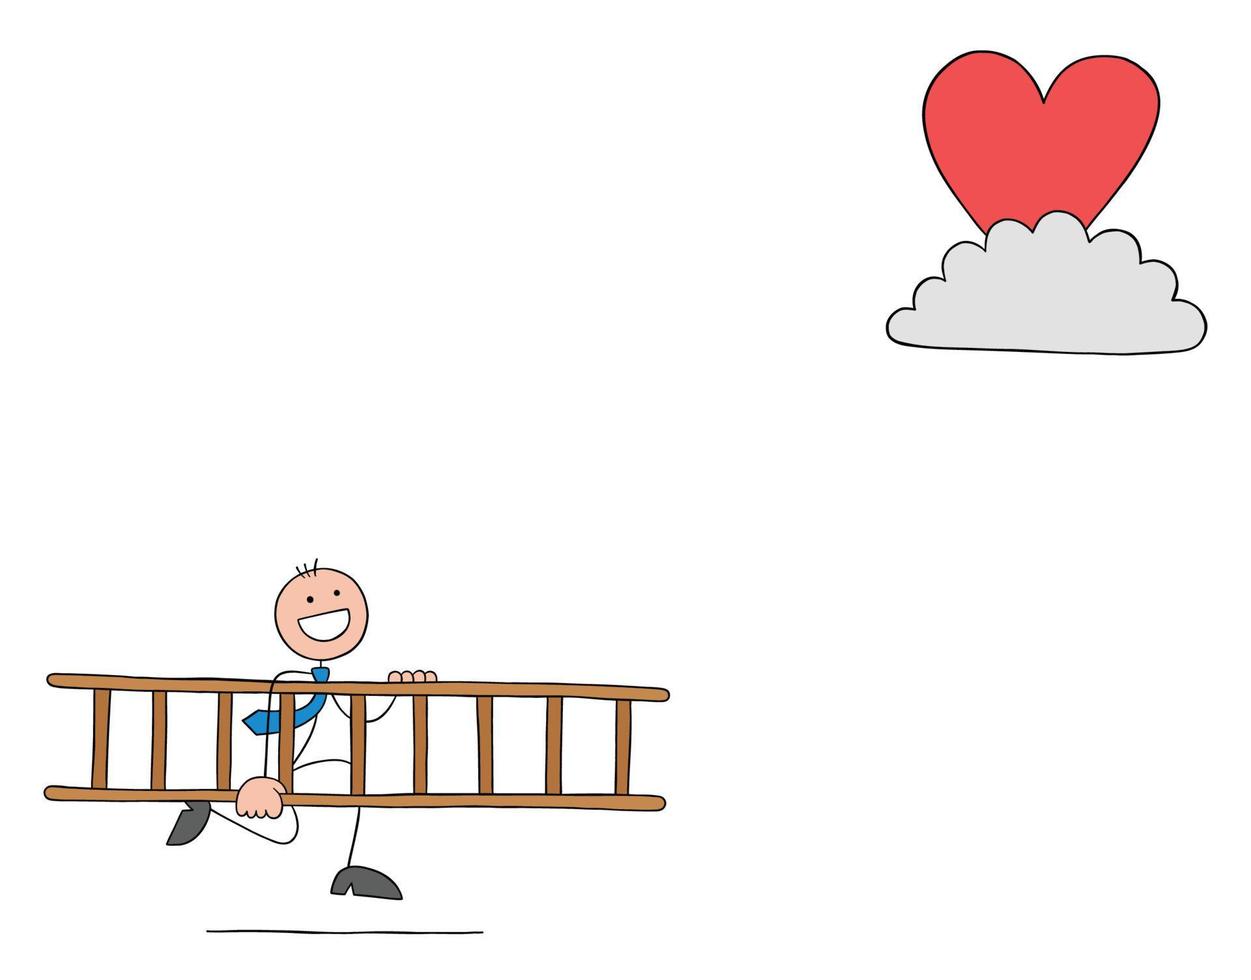 L'uomo d'affari stickman porta la scala di legno per raggiungere il cuore sulla nuvola, illustrazione di vettore del fumetto del profilo disegnato a mano